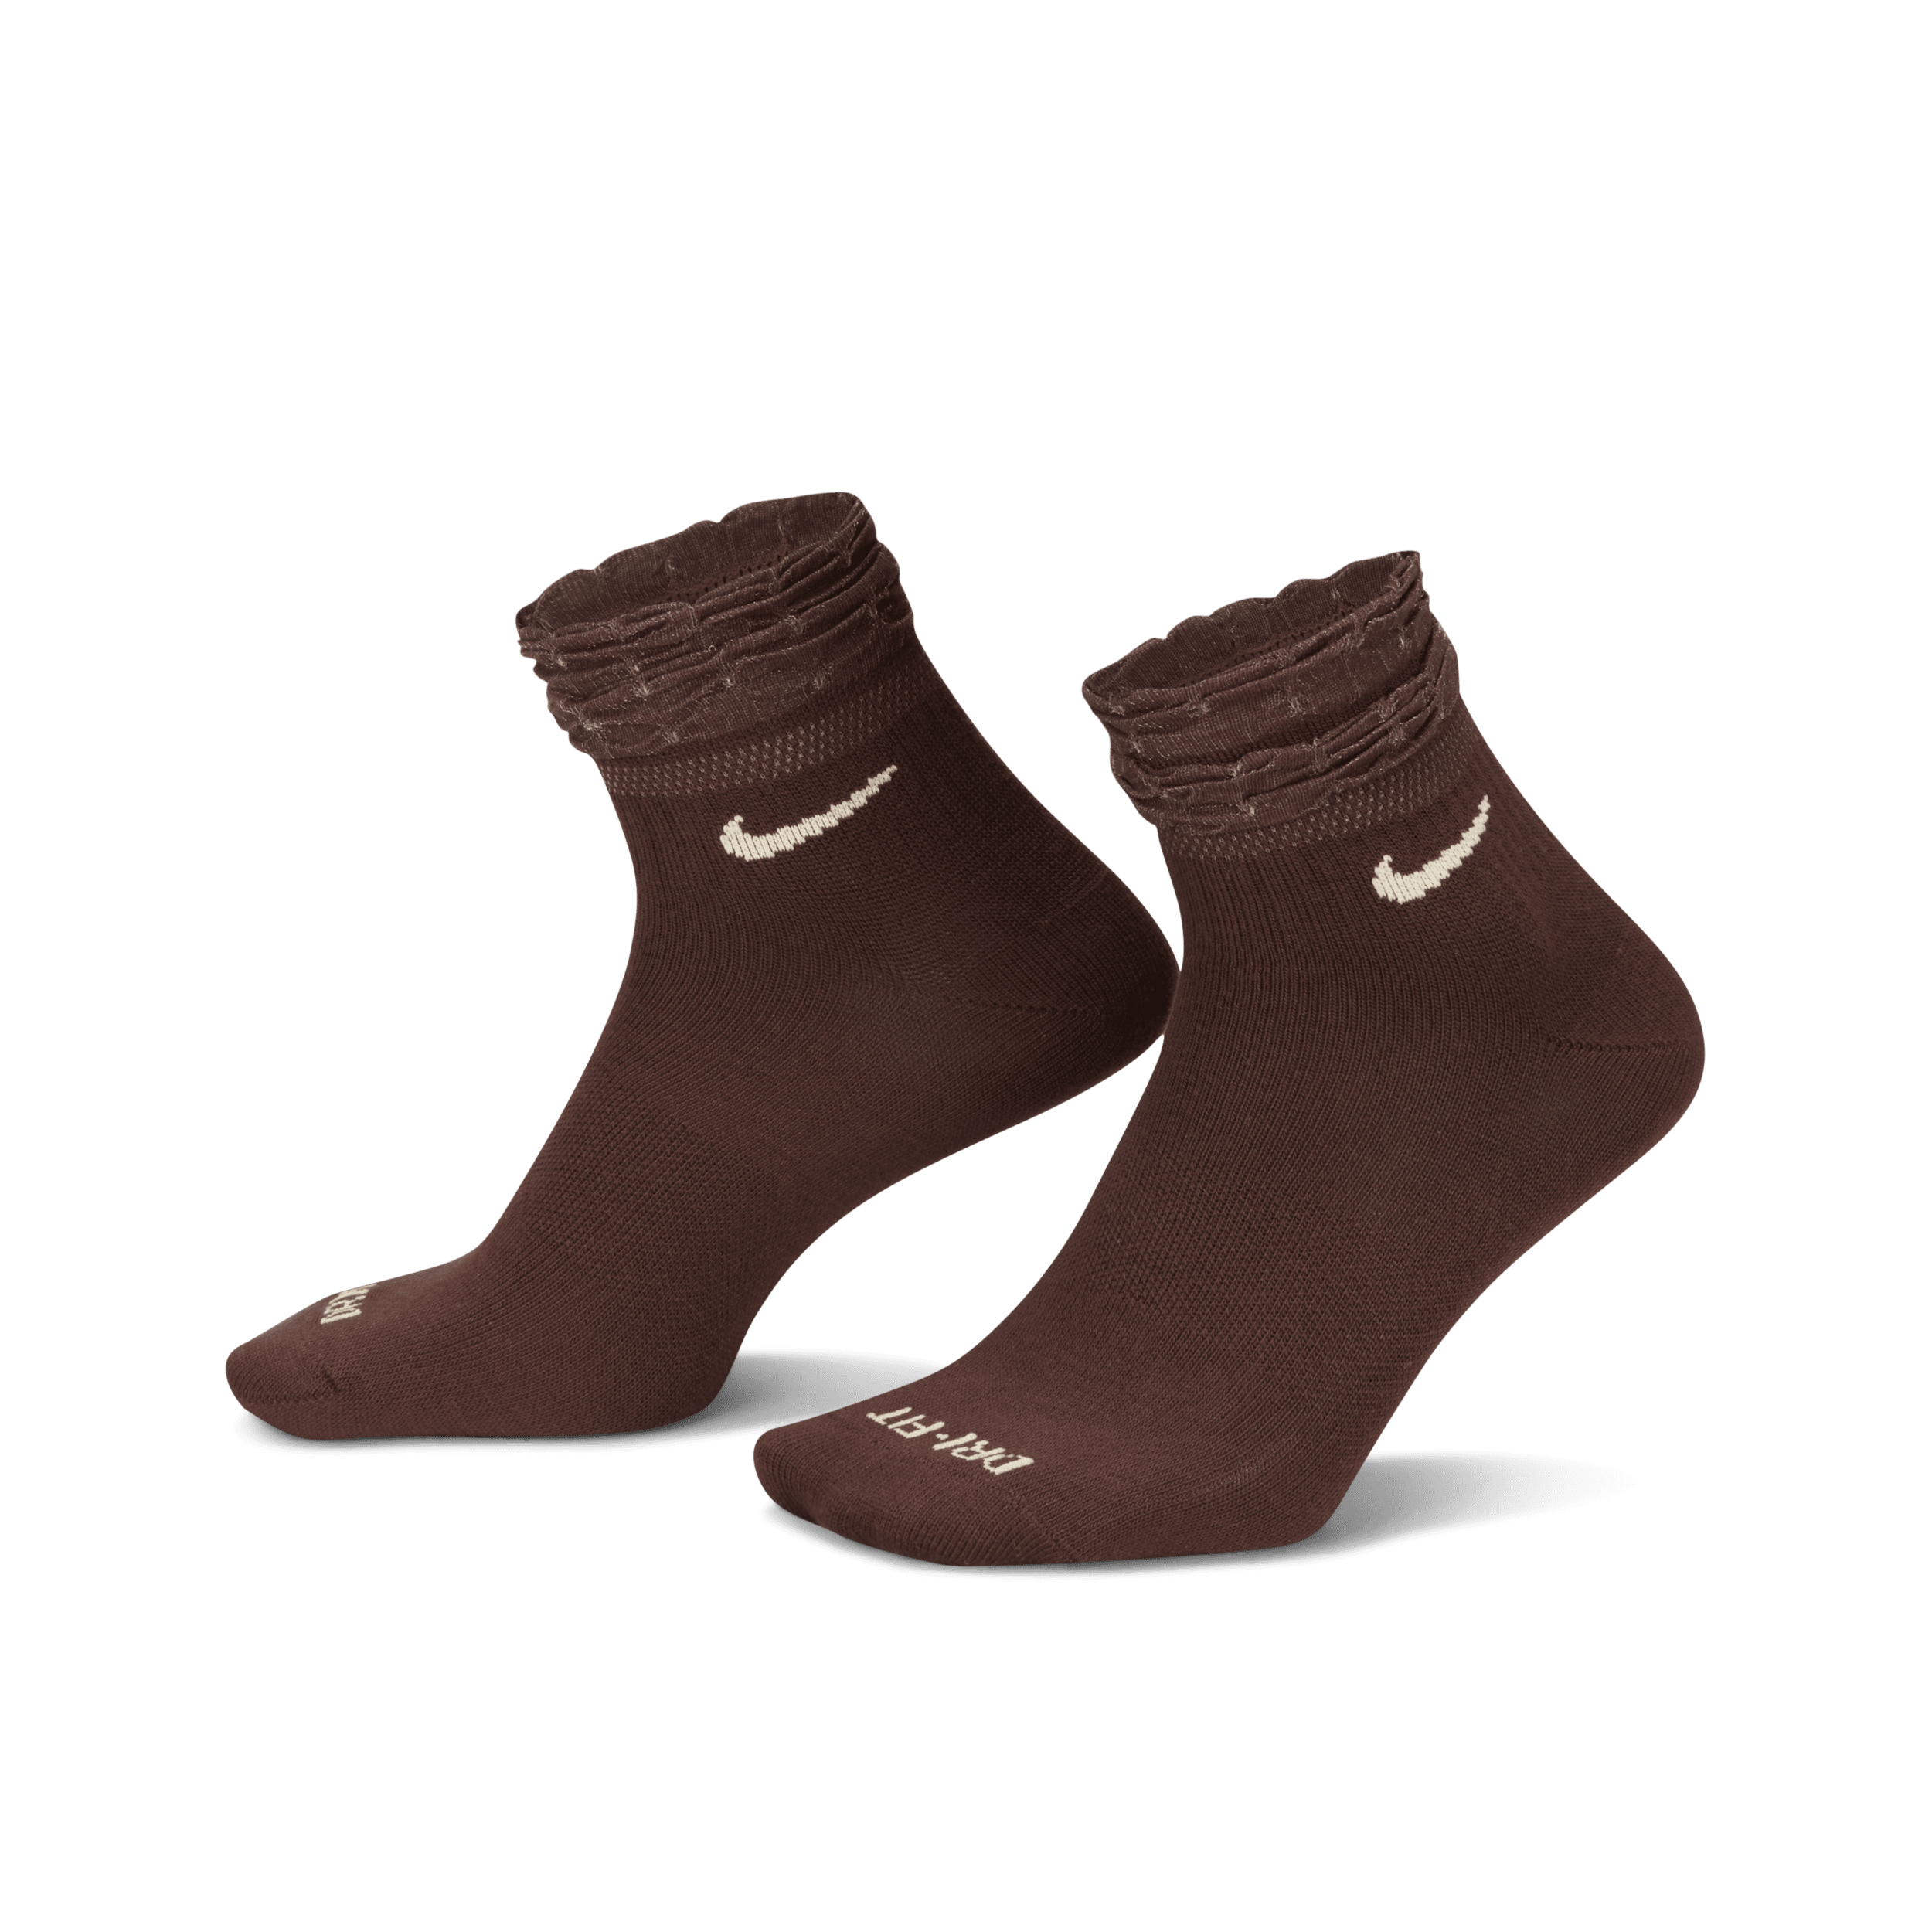 Calze da training alla caviglia Nike Everyday - Marrone